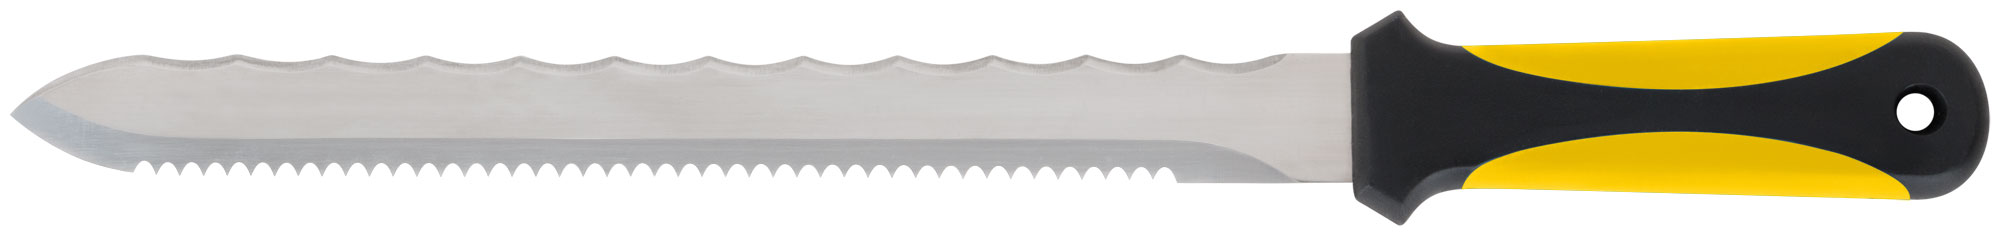 Нож для резки теплоизоляционных плит, двустороннее лезвие 240х27 мм, нерж.сталь, прорезиненная ручка